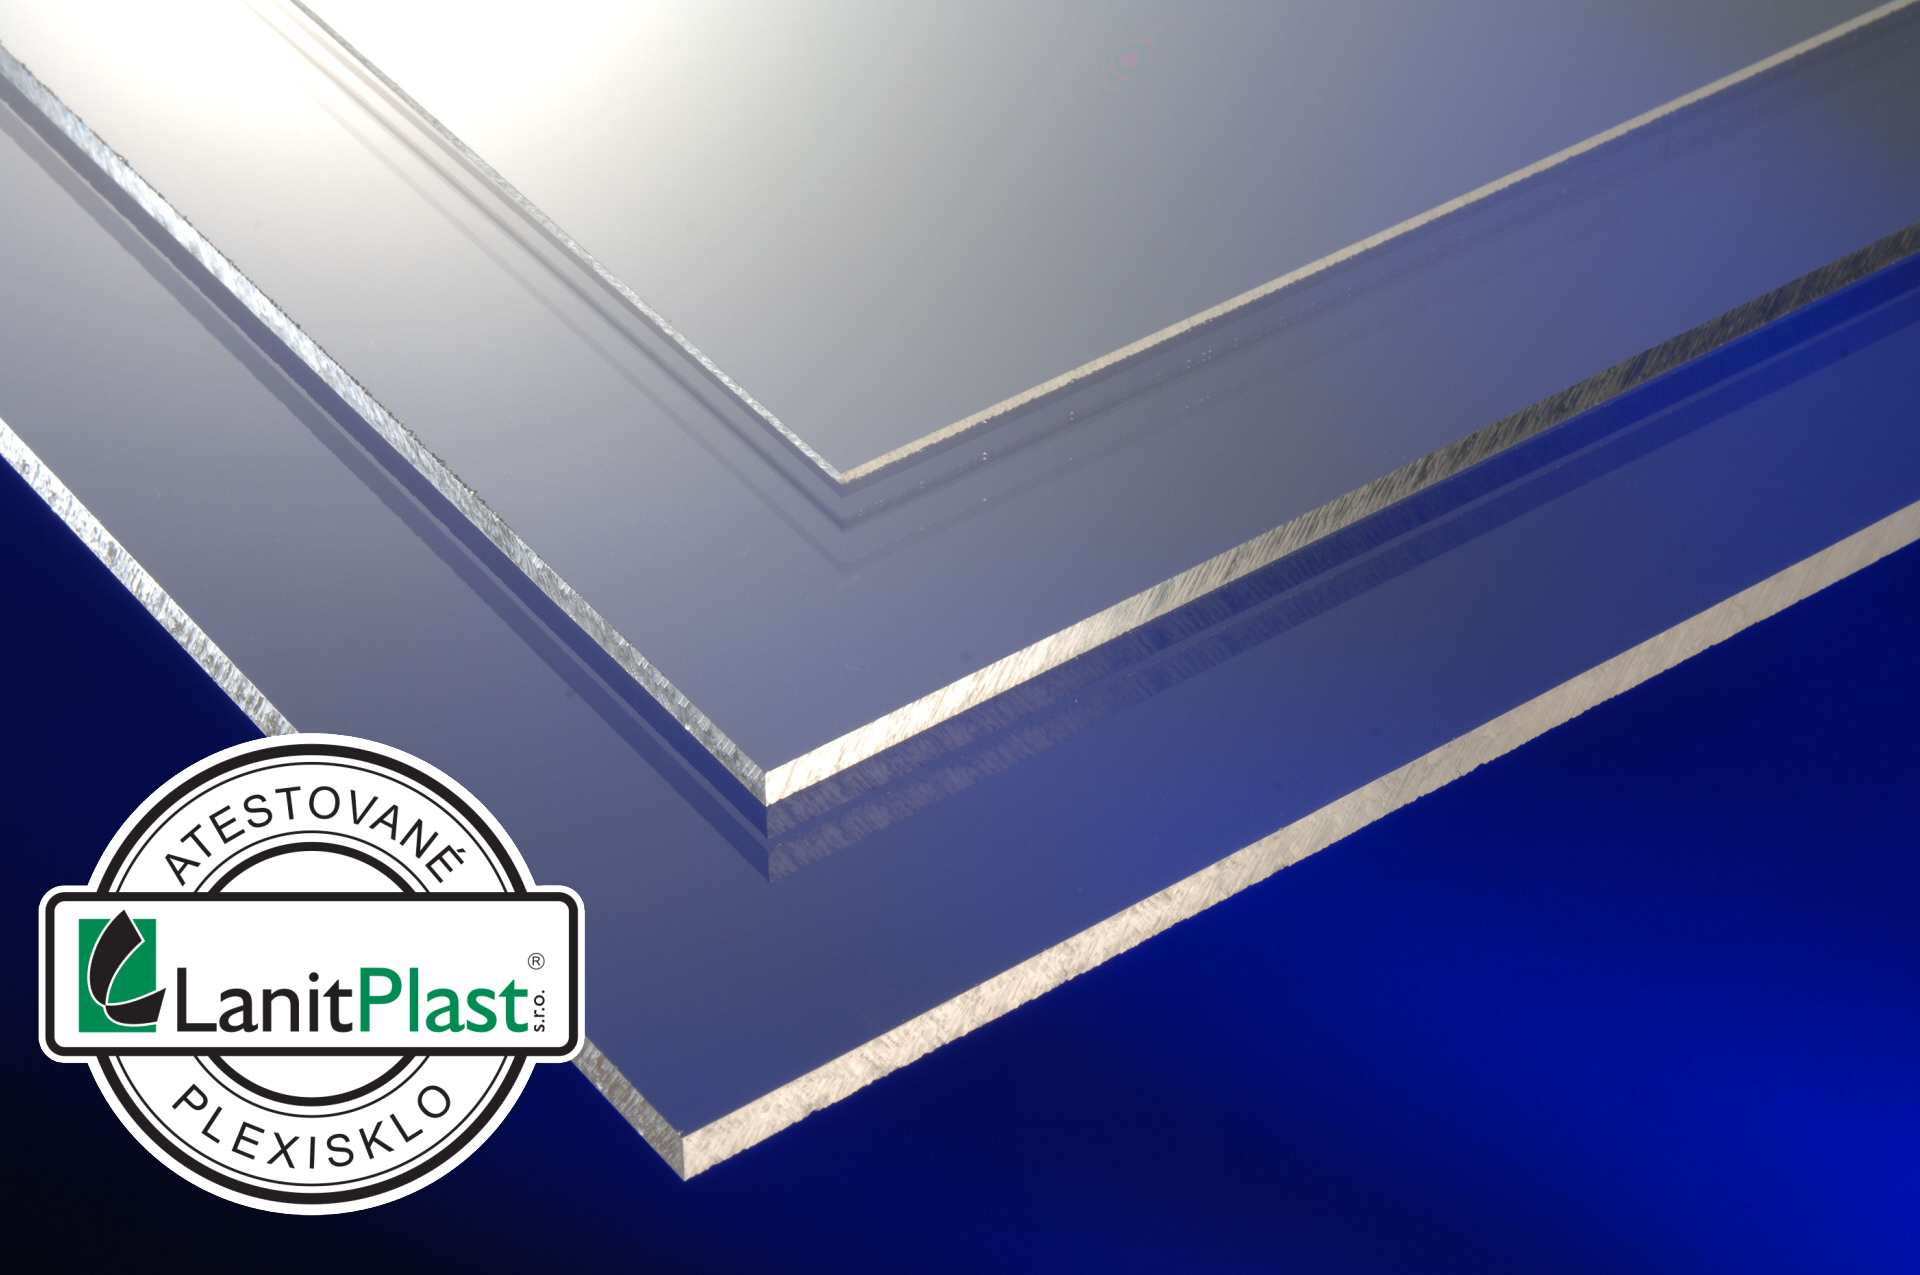 LANIT PLAST Marcryl FS 10mm plexisklo čiré 1,025x2,033m PK65-457